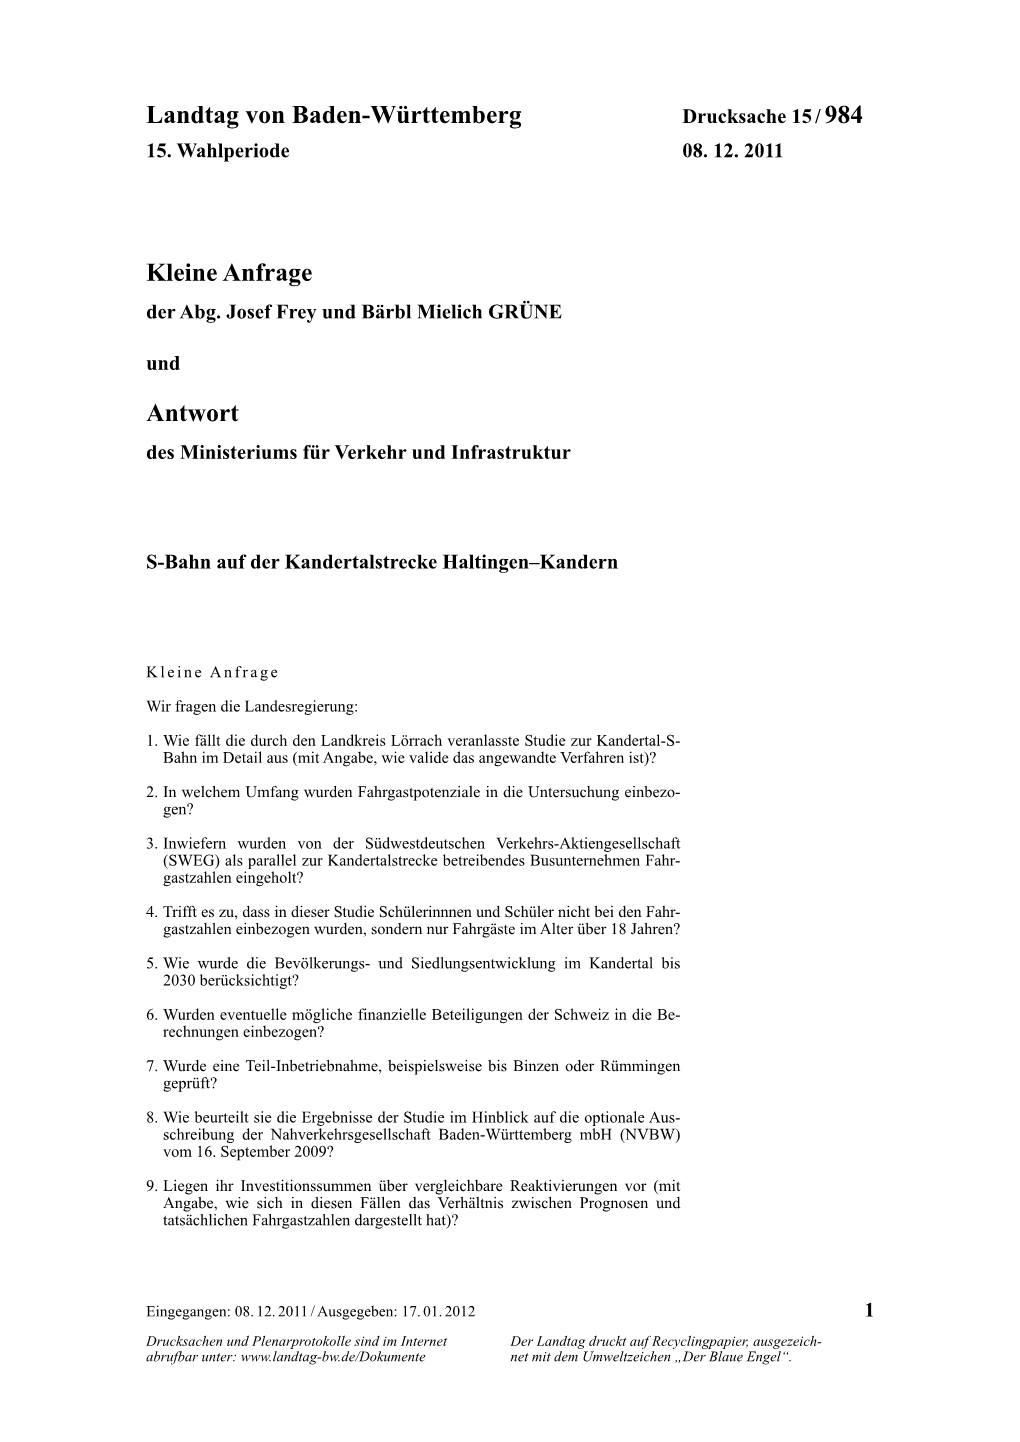 Landtag Von Baden-Württemberg Kleine Anfrage Antwort